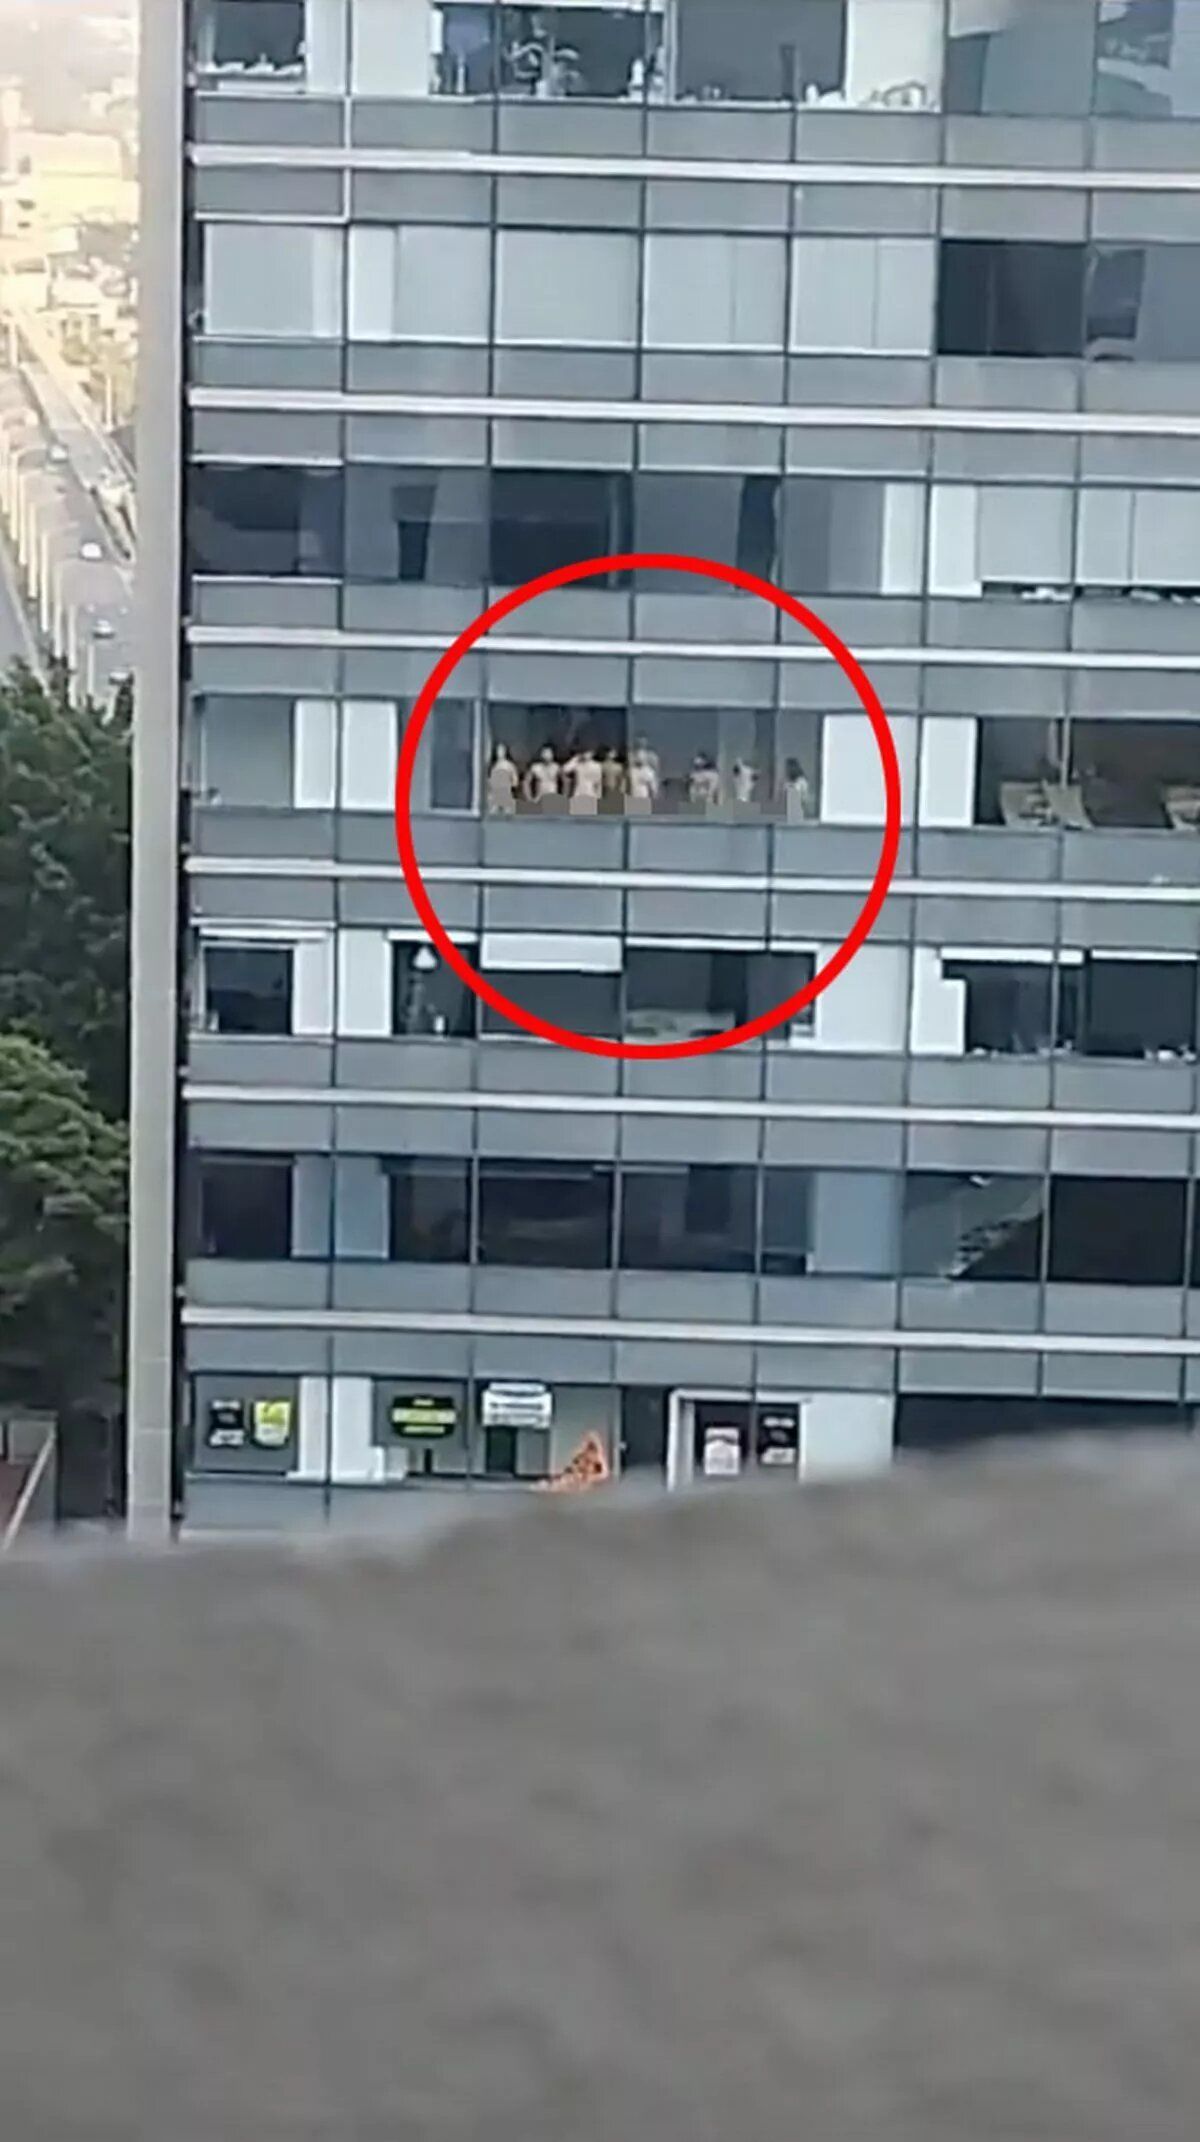 11 голых мужчин и женщин позировали у панорамного окна небоскреба — ТСН,  новости 1+1 — Курьезы